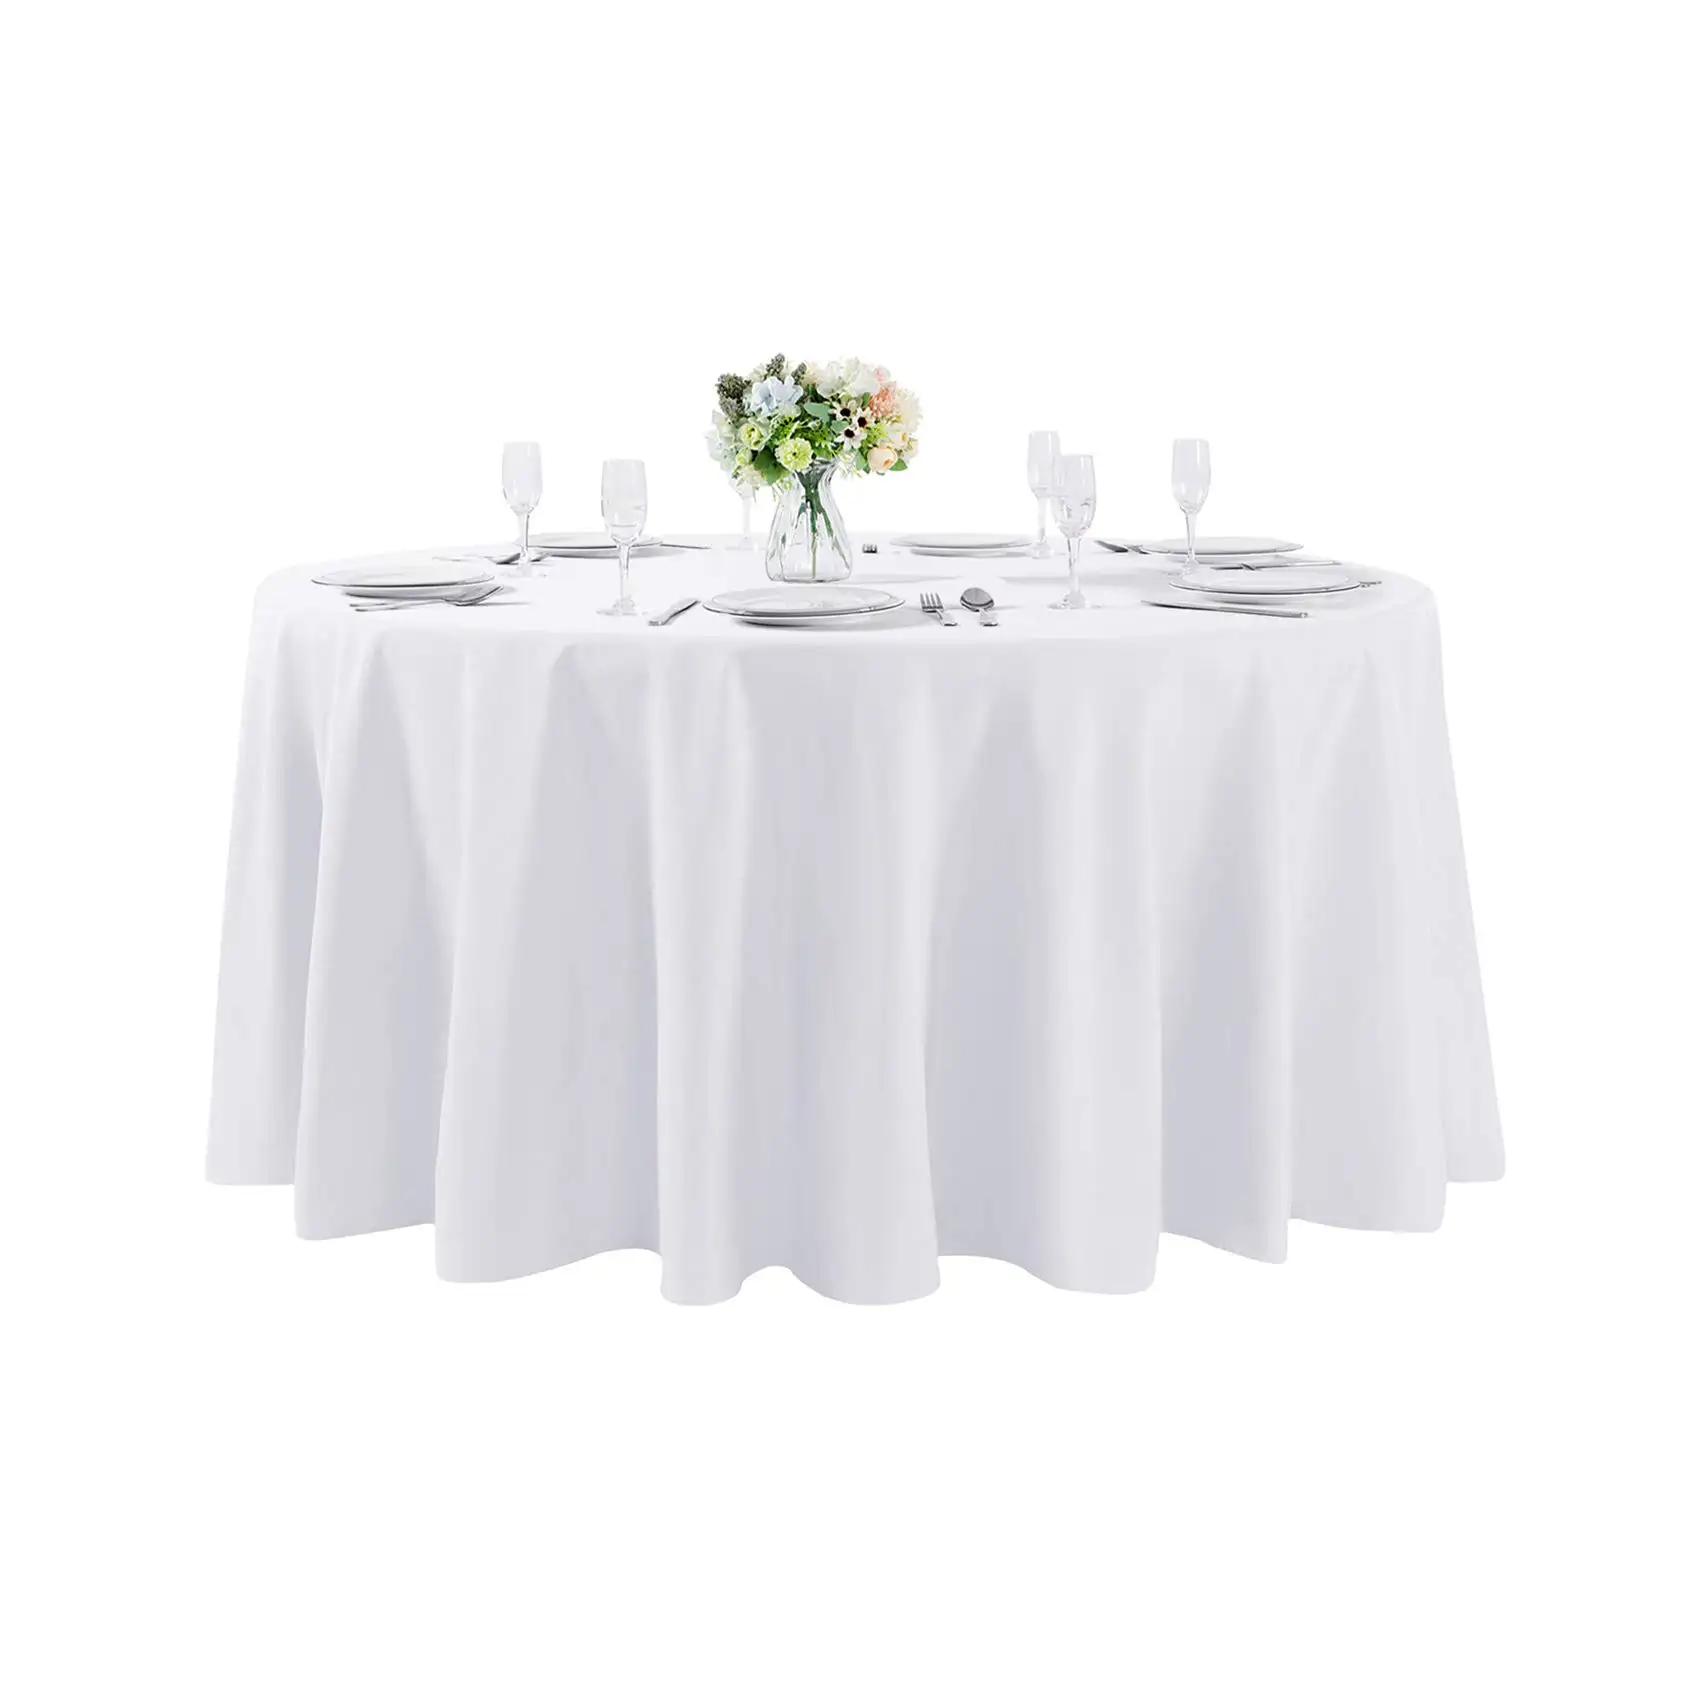 סיטונאי באיכות גבוהה גדול גודל חתונה עגול פוליאסטר שולחן כיסוי בד למסיבה